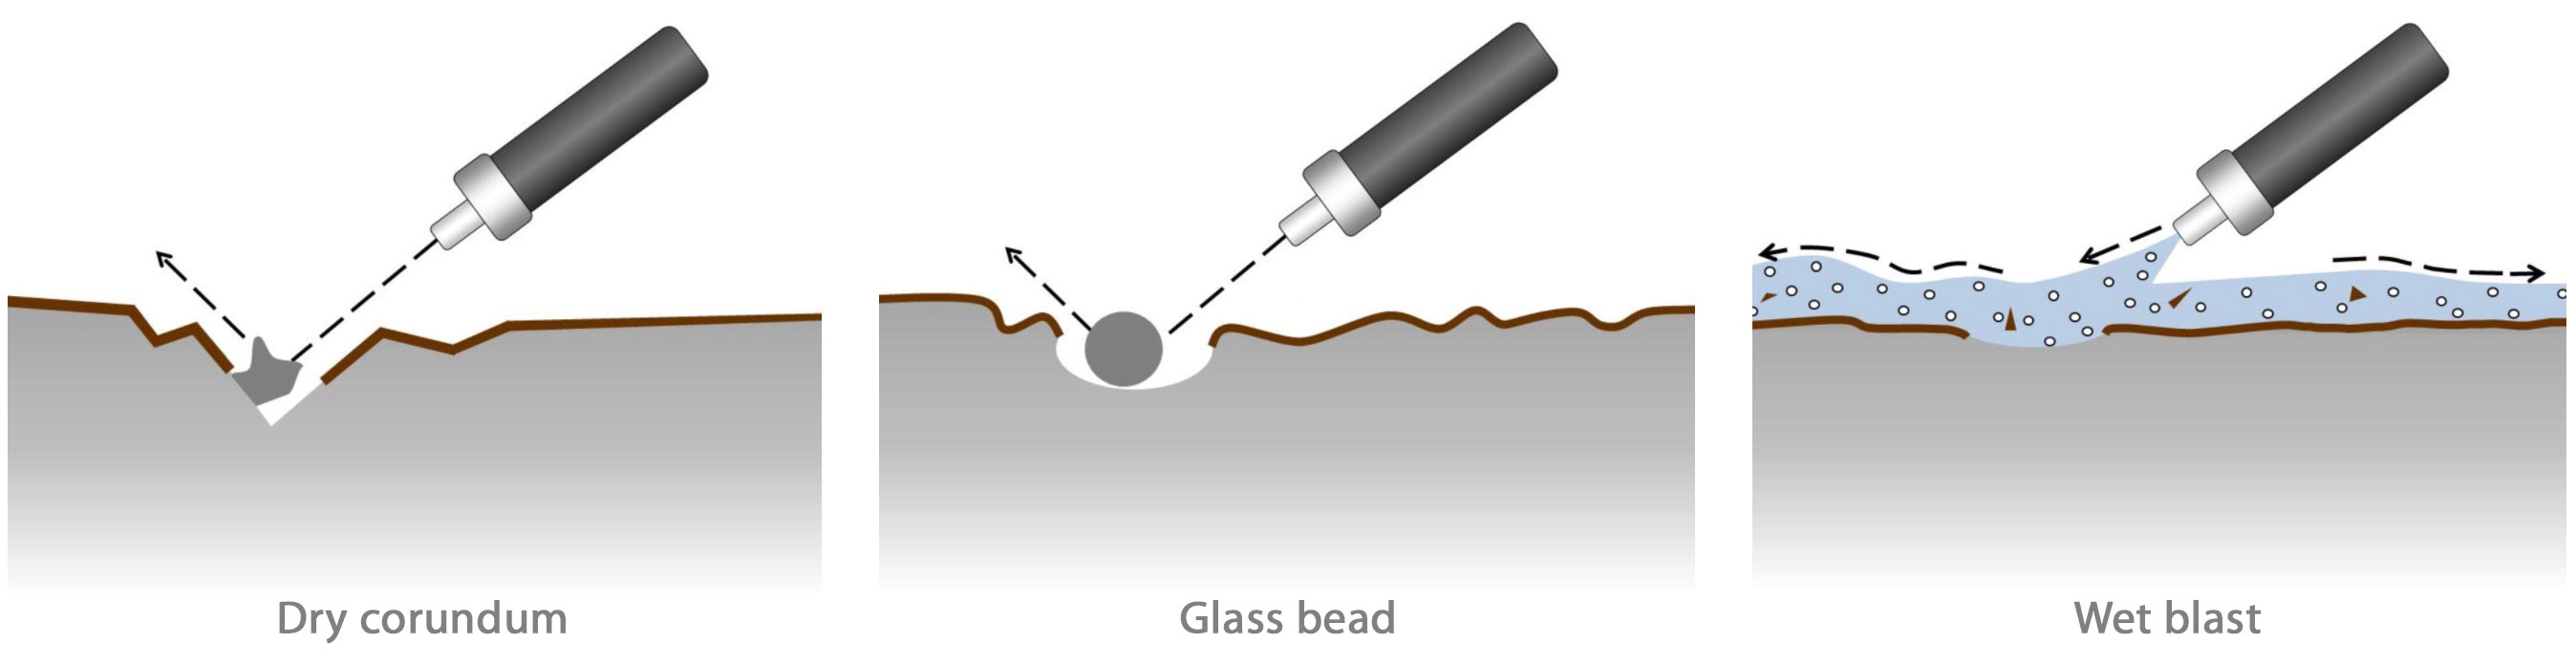 Traitement de surface hygiénique à micro-jet d’eau ou projection à sec EN | Goudsmit Magnetics